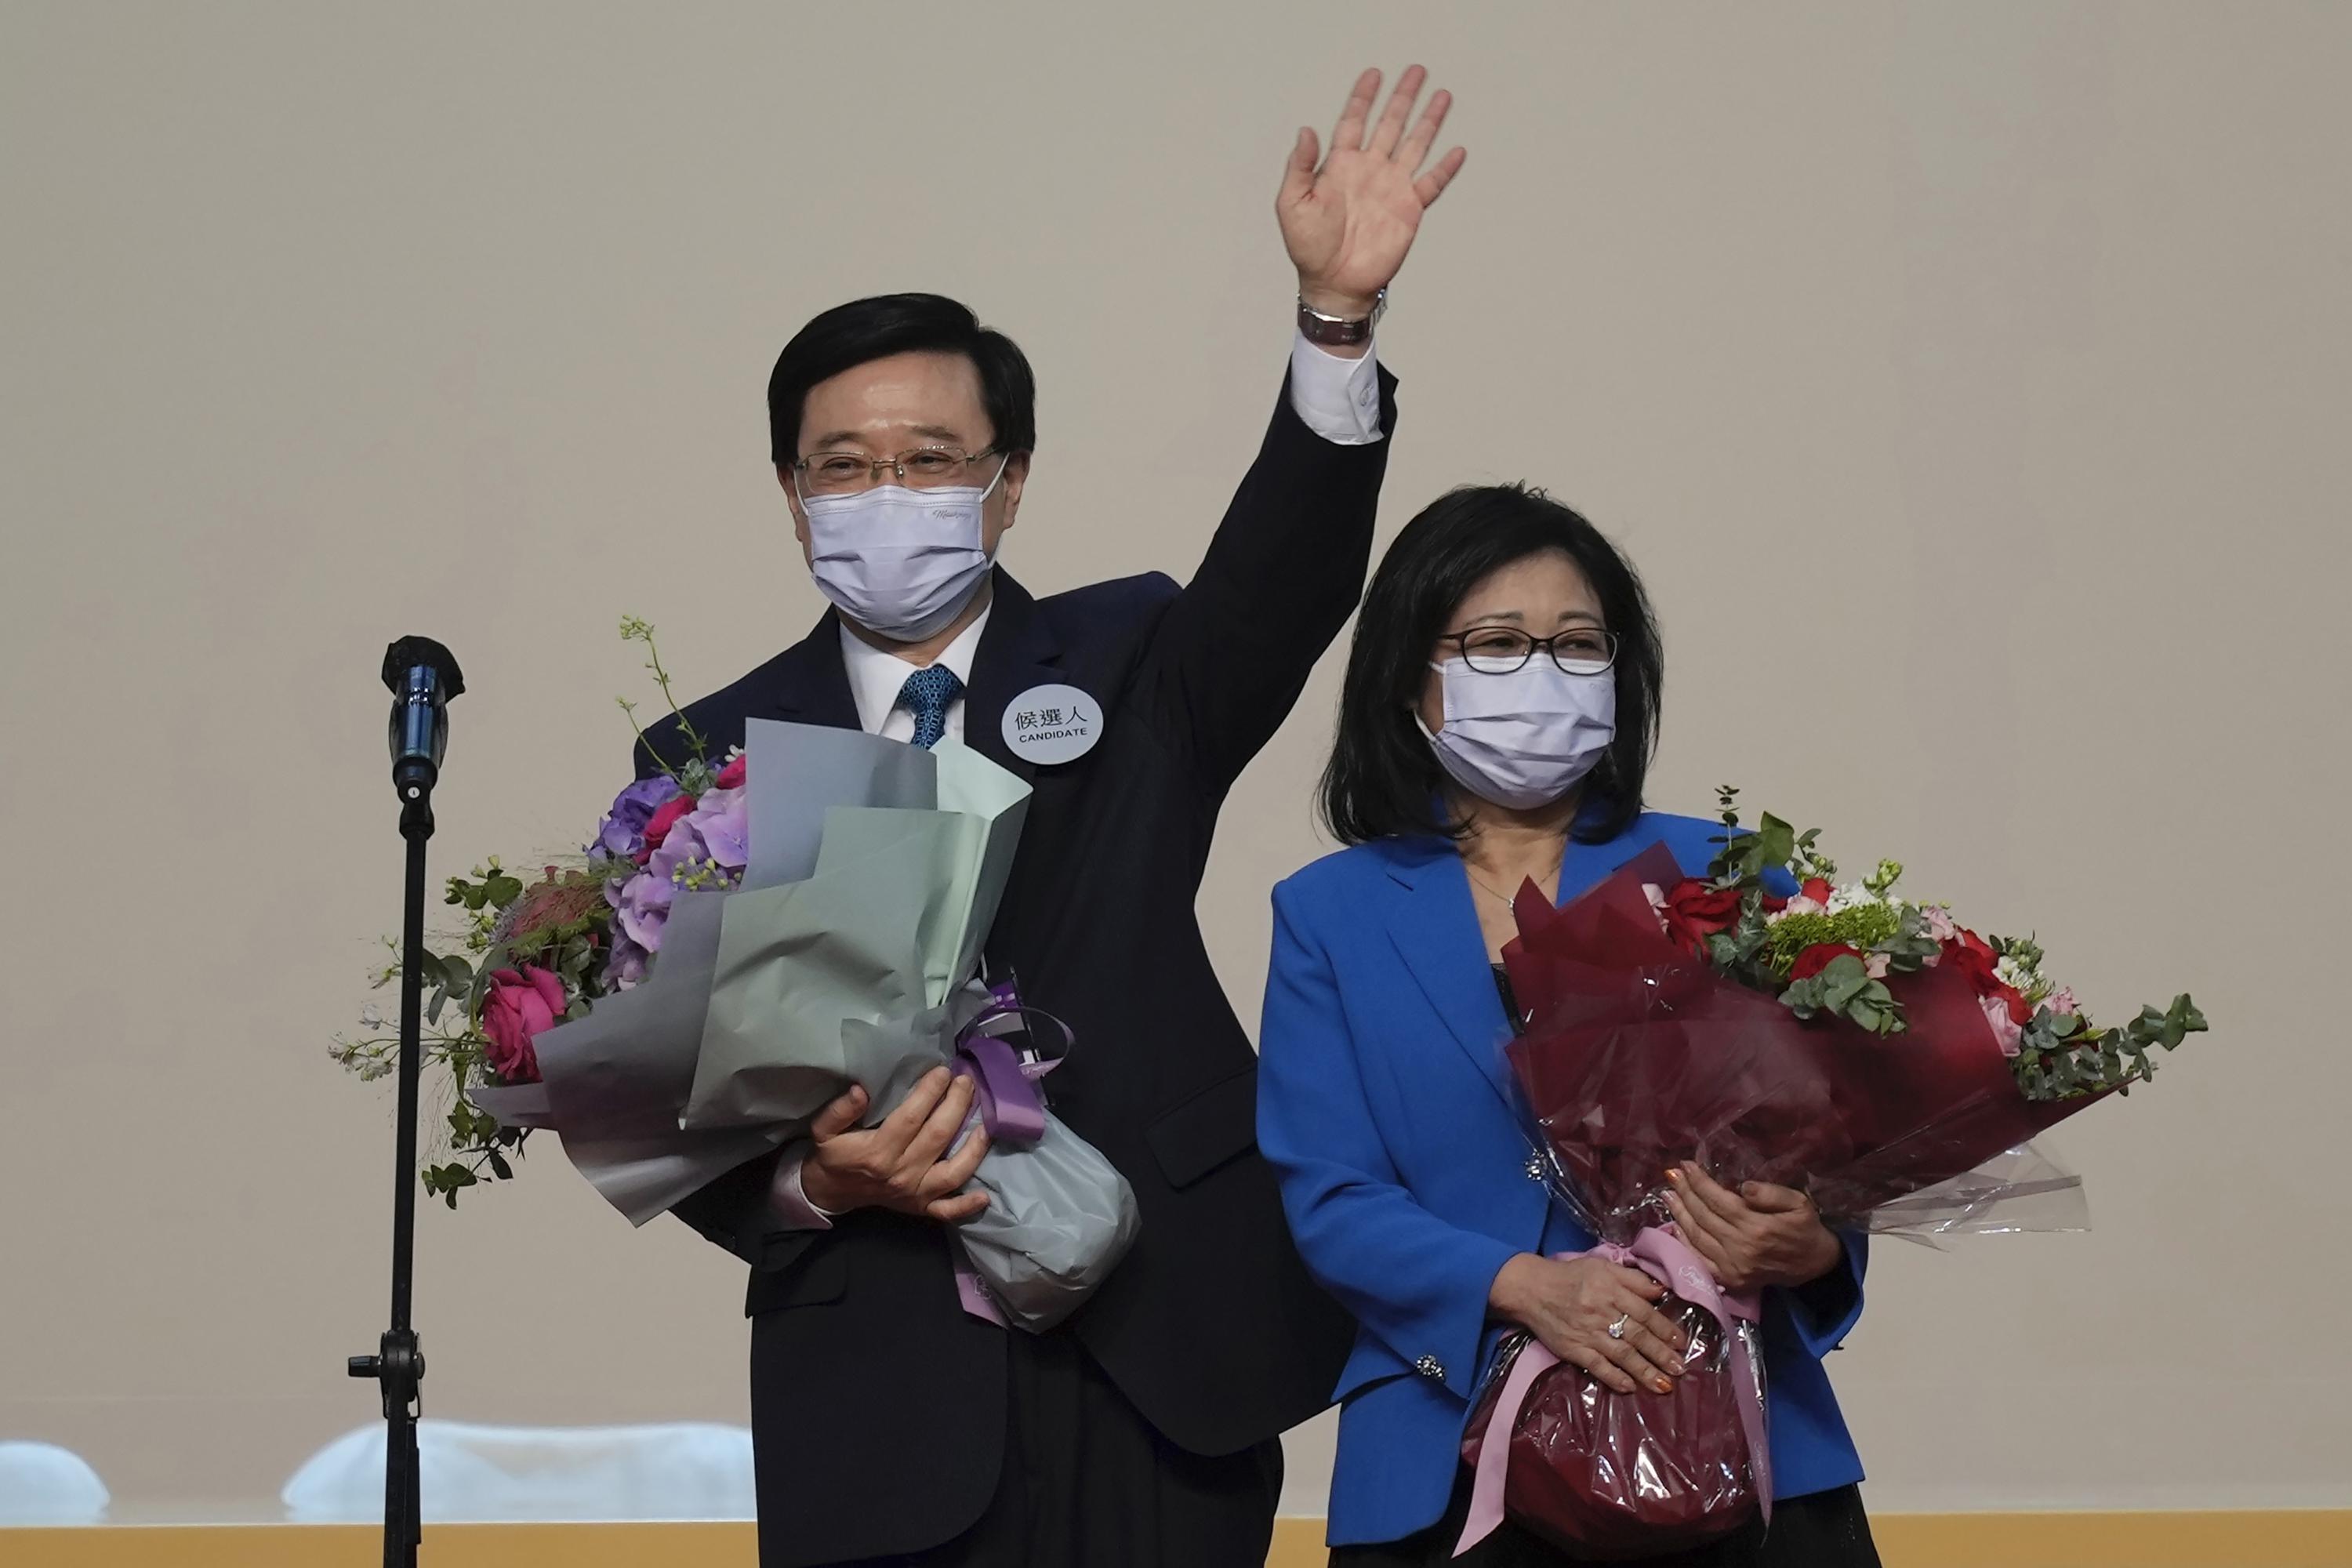 John Lee, Pekings Vertrauter, wurde zum nächsten Präsidenten Hongkongs gewählt